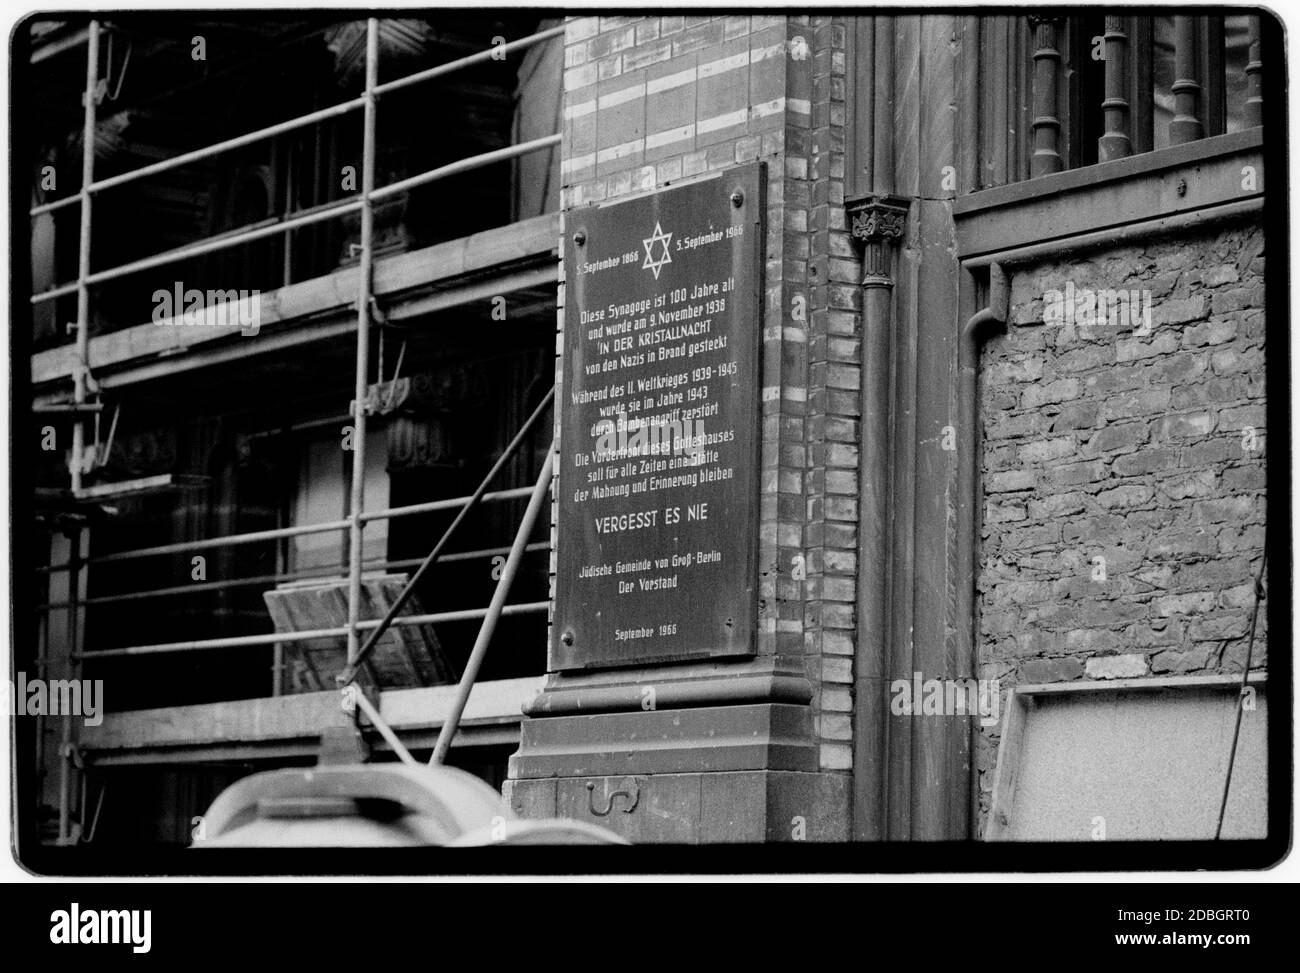 DDR 1990 gescannt in 2020 Synagoge in Berlin mit Glasbruch aus Kristallnacht oder die Nacht des Glasscherben, auch Novemberpogrom(e) genannt, war ein Pogrom gegen Juden, das von SA paramilitärischen Kräften und Zivilisten in Nazi-Deutschland am 9. Und 10. November 1938 durchgeführt wurde. Die deutschen Behörden schauten zu, ohne einzugreifen.[3] der Name Kristallnacht stammt von den Scherben zerbrochenen Glases, die die Straßen übersäten, nachdem die Fenster jüdischer Geschäfte, Gebäude und Synagogen zerschlagen wurden. DDR, Deutsche Demokratische Republik die DDR nach dem Sturz der DDR Stockfoto